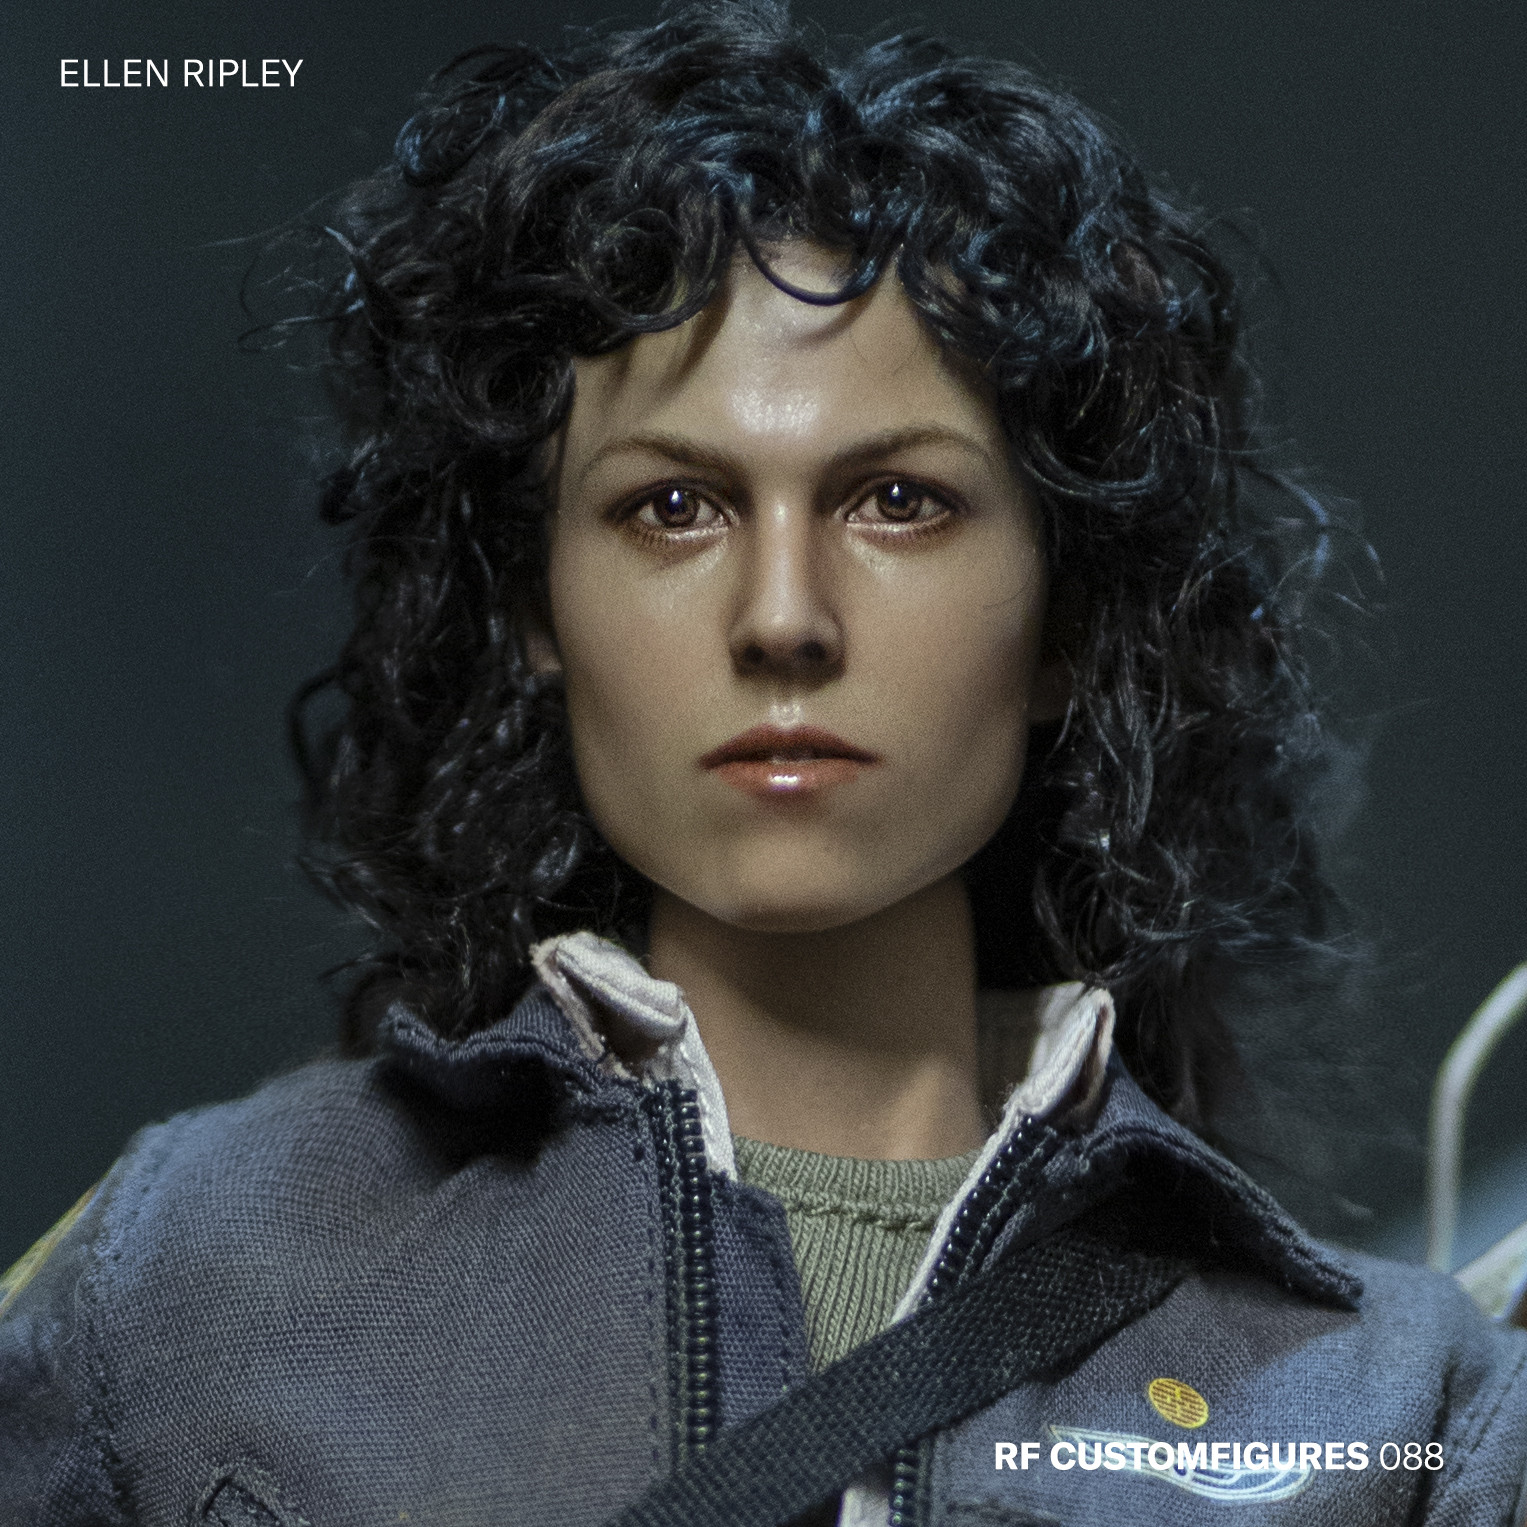 My LT. Ellen Ripley Figure/s by HellboysLady on DeviantArt